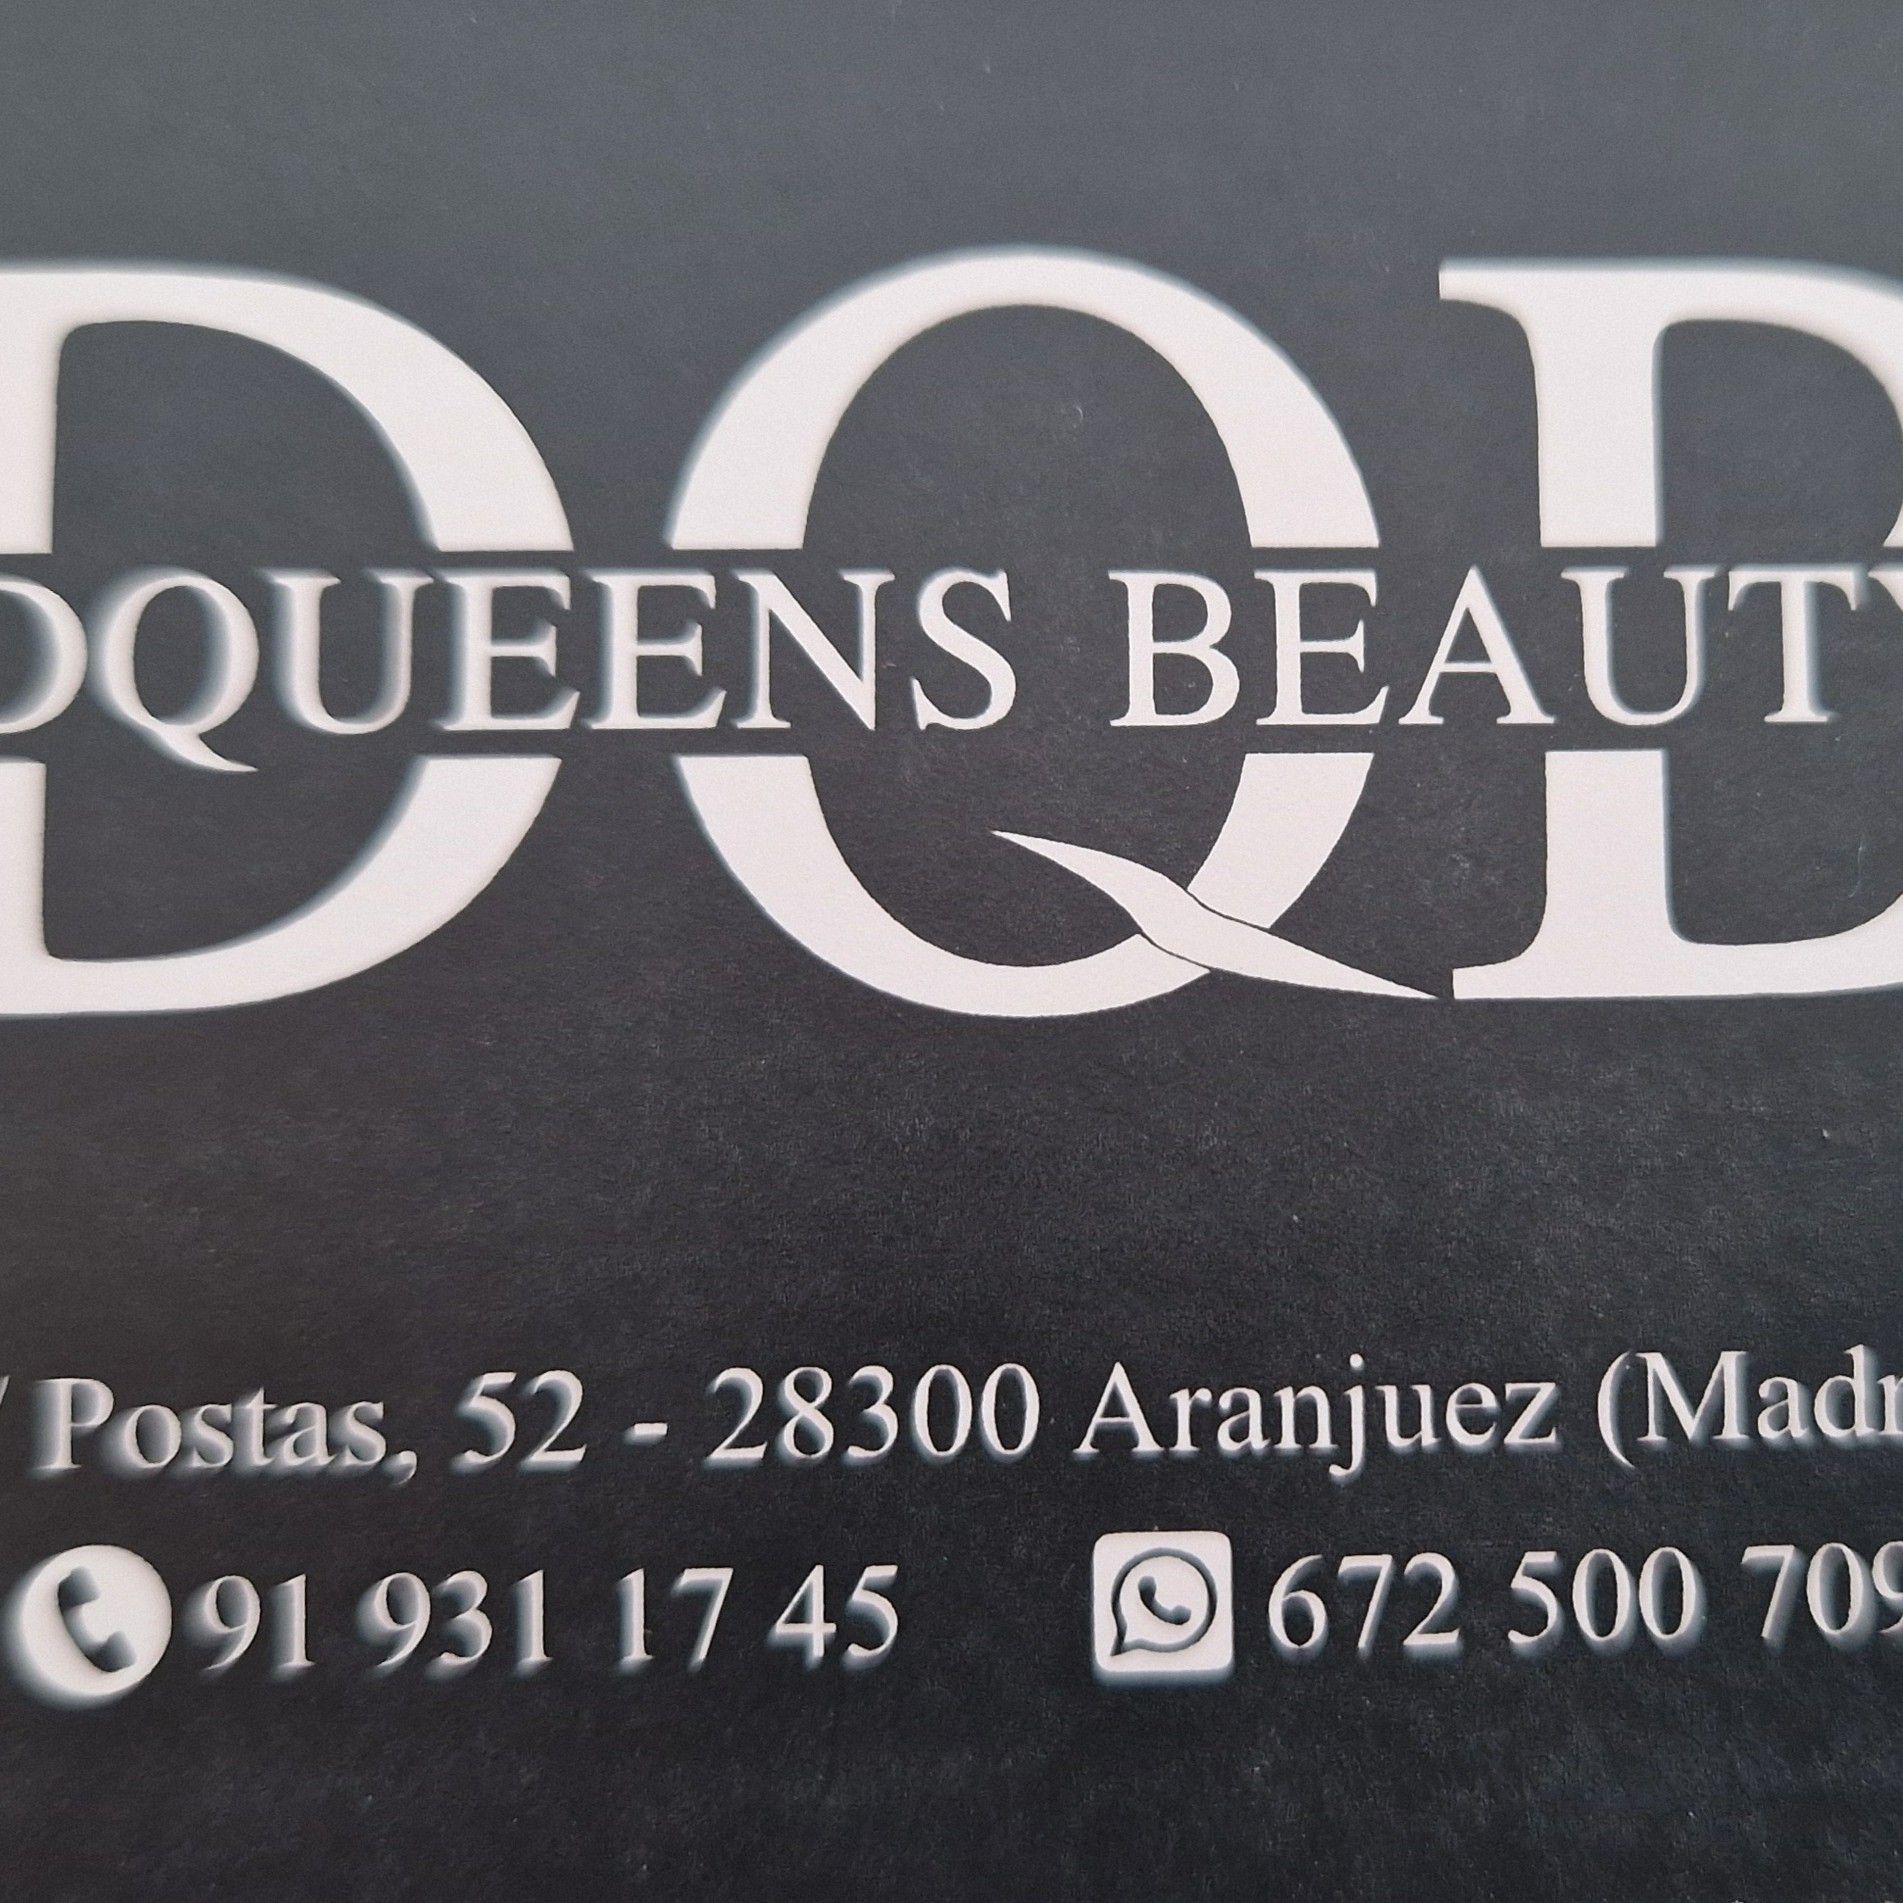 DQUEENS BEAUTY, Calle de Postas, 52, 52, 28300, Aranjuez